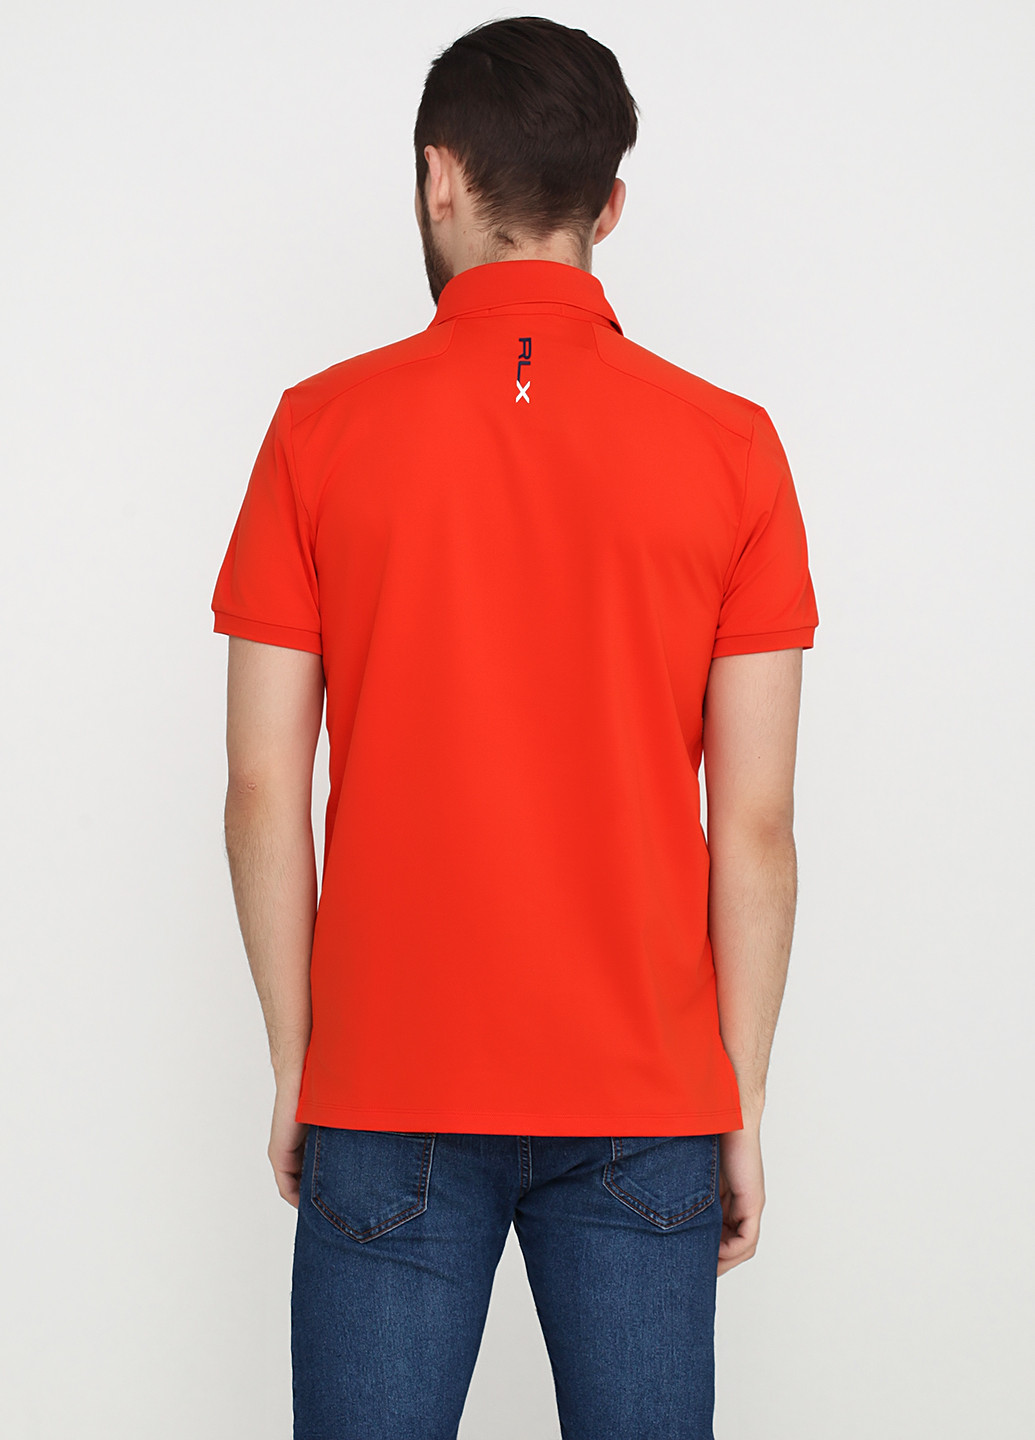 Оранжевая футболка-поло для мужчин Ralph Lauren с логотипом